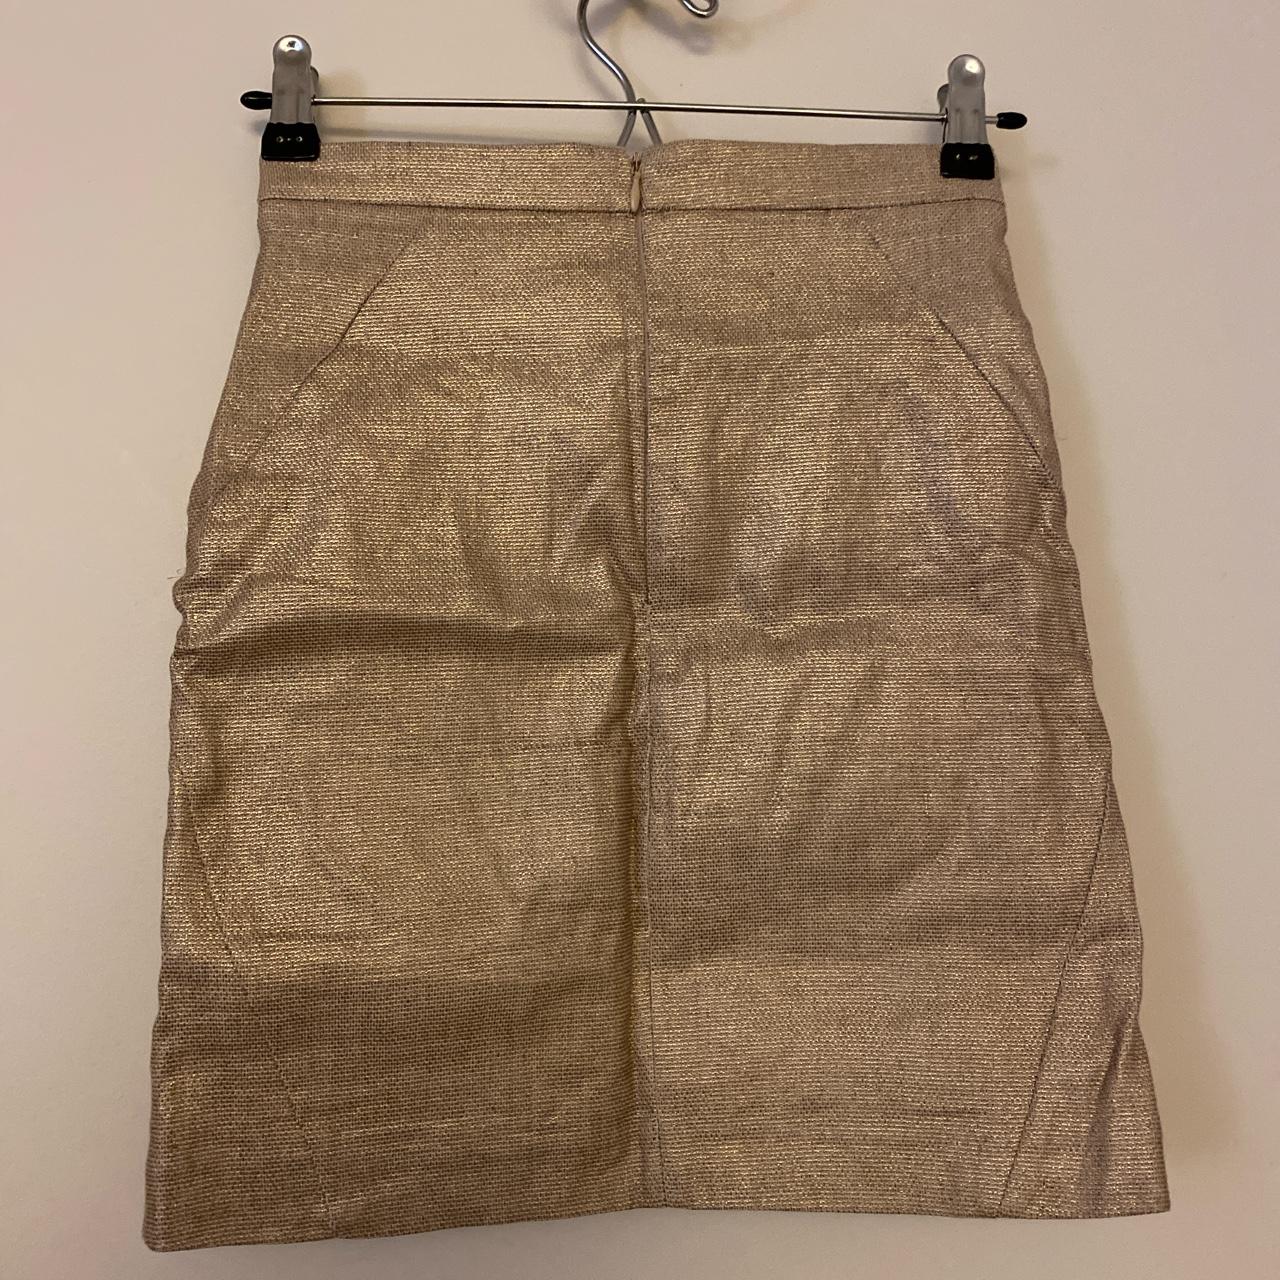 KOOKAÏ Women's Gold Skirt (2)